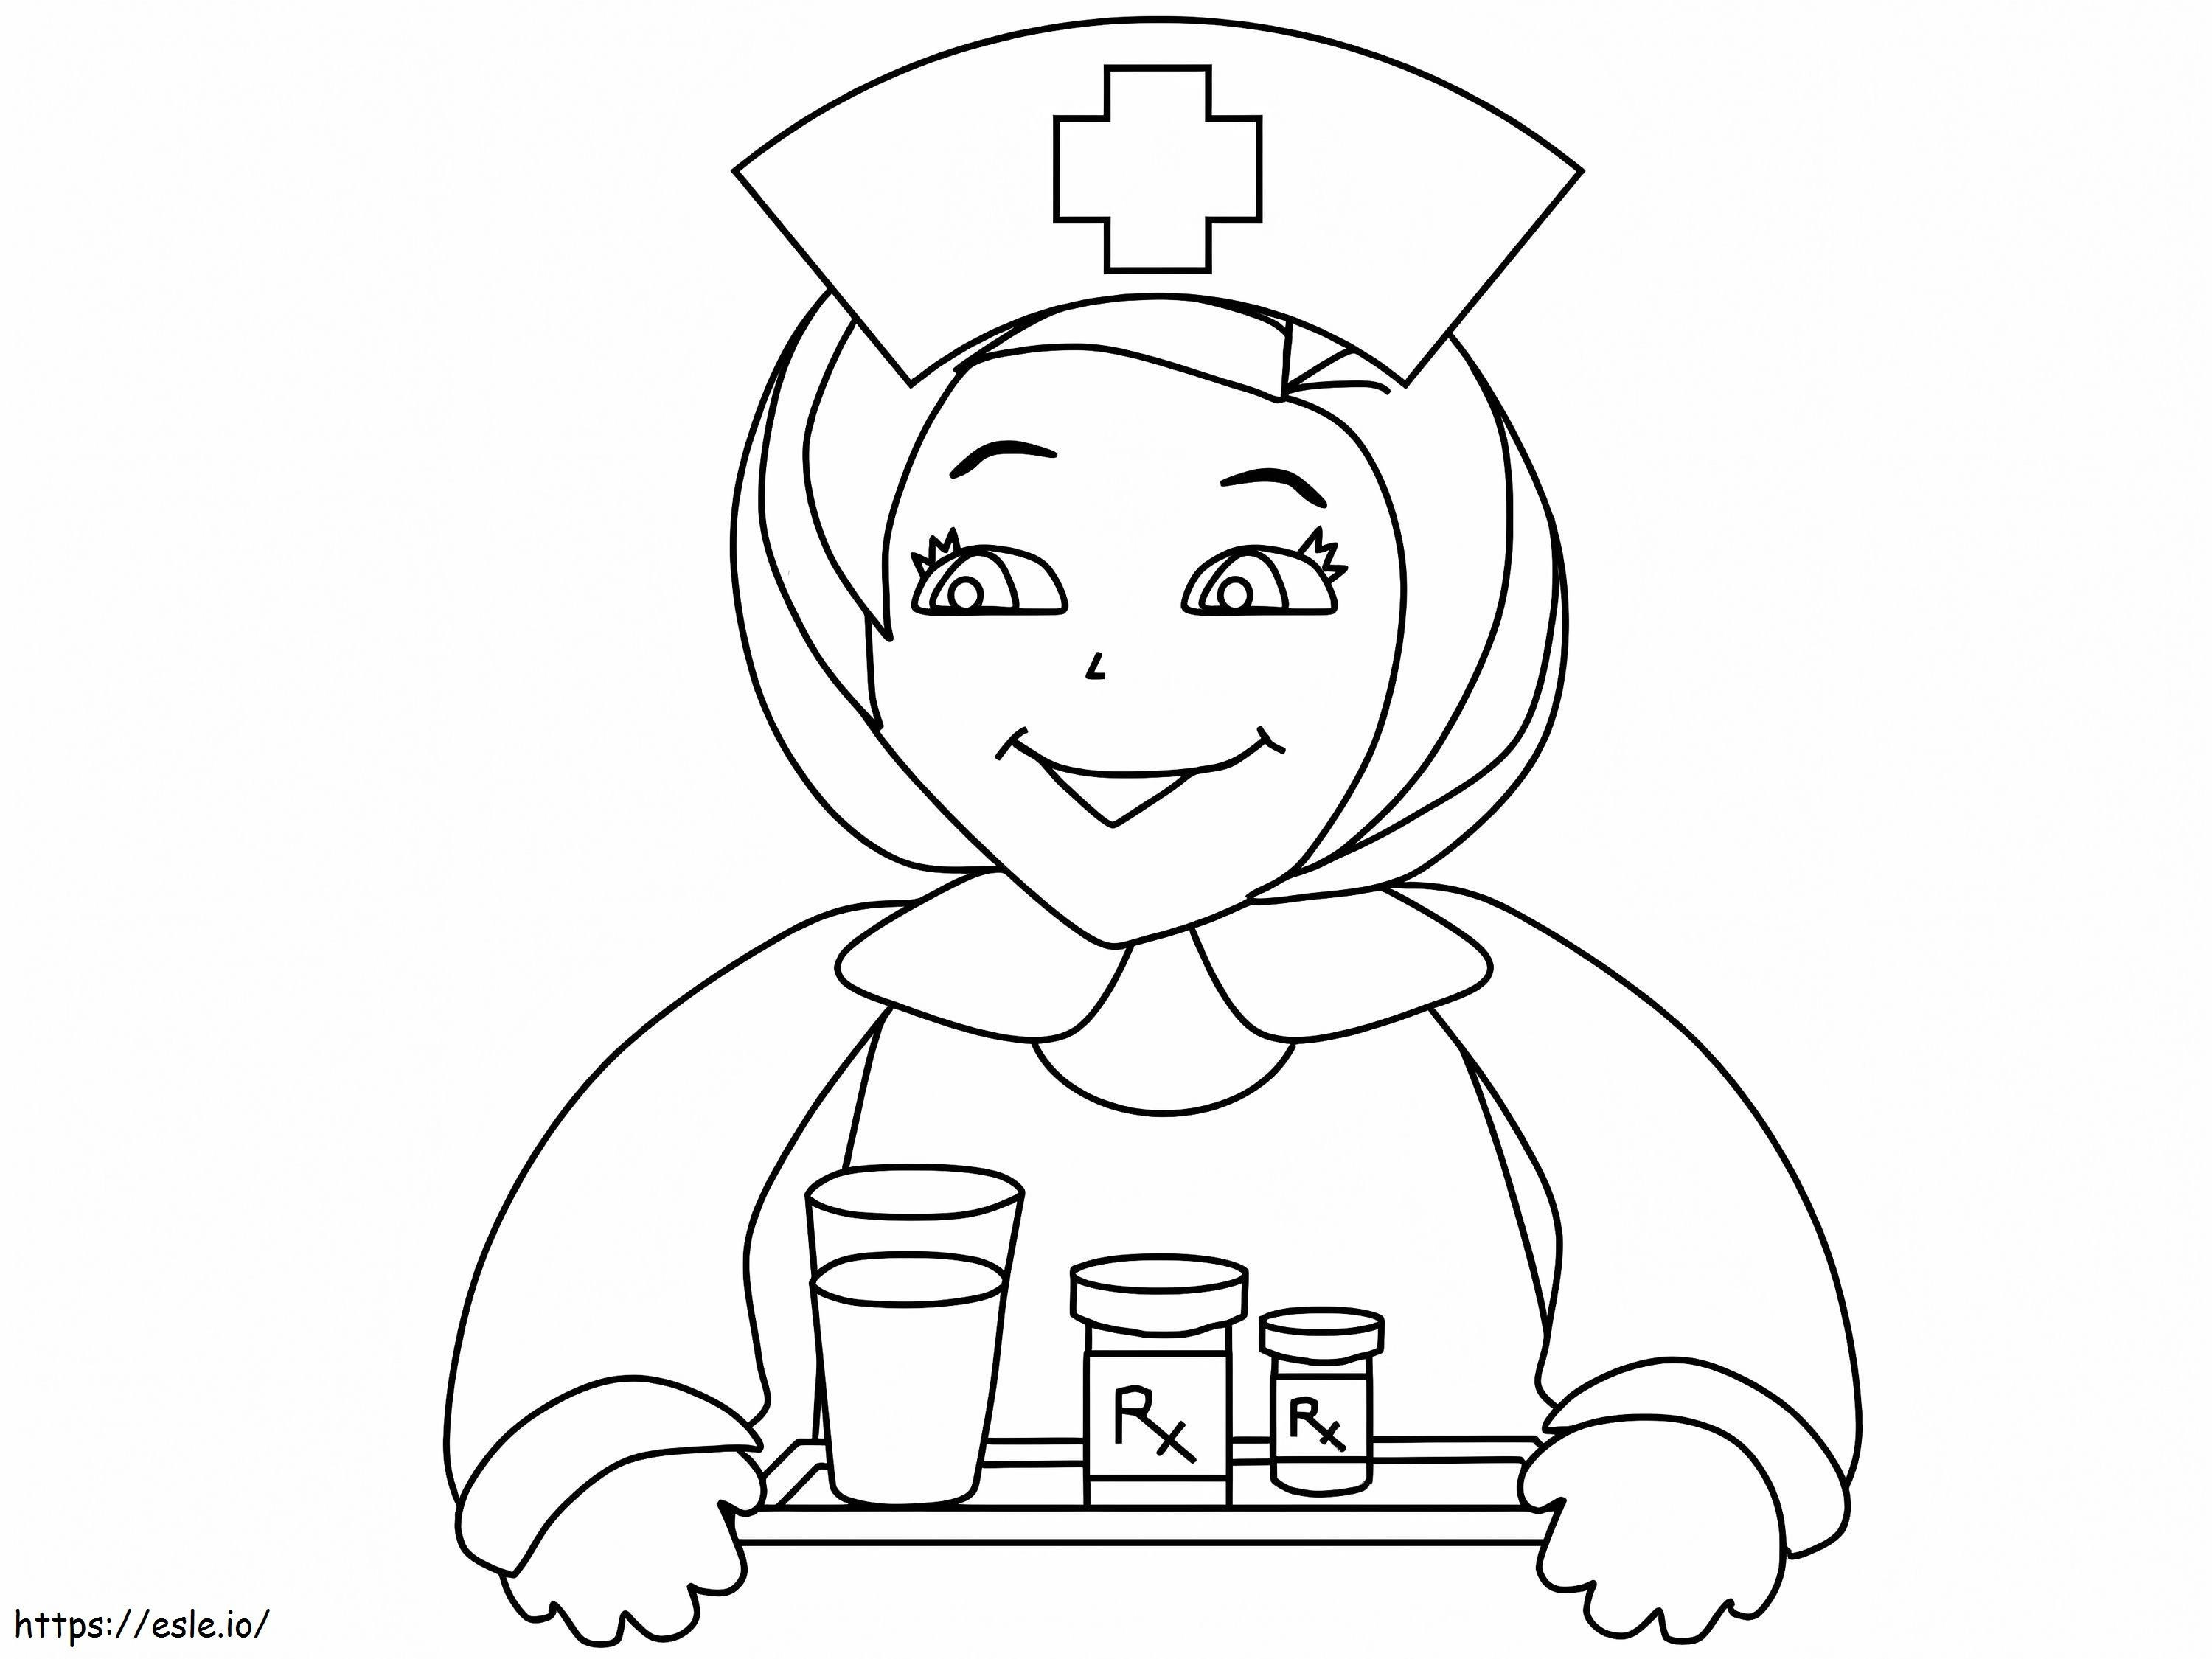 Krankenschwester lächelt ausmalbilder